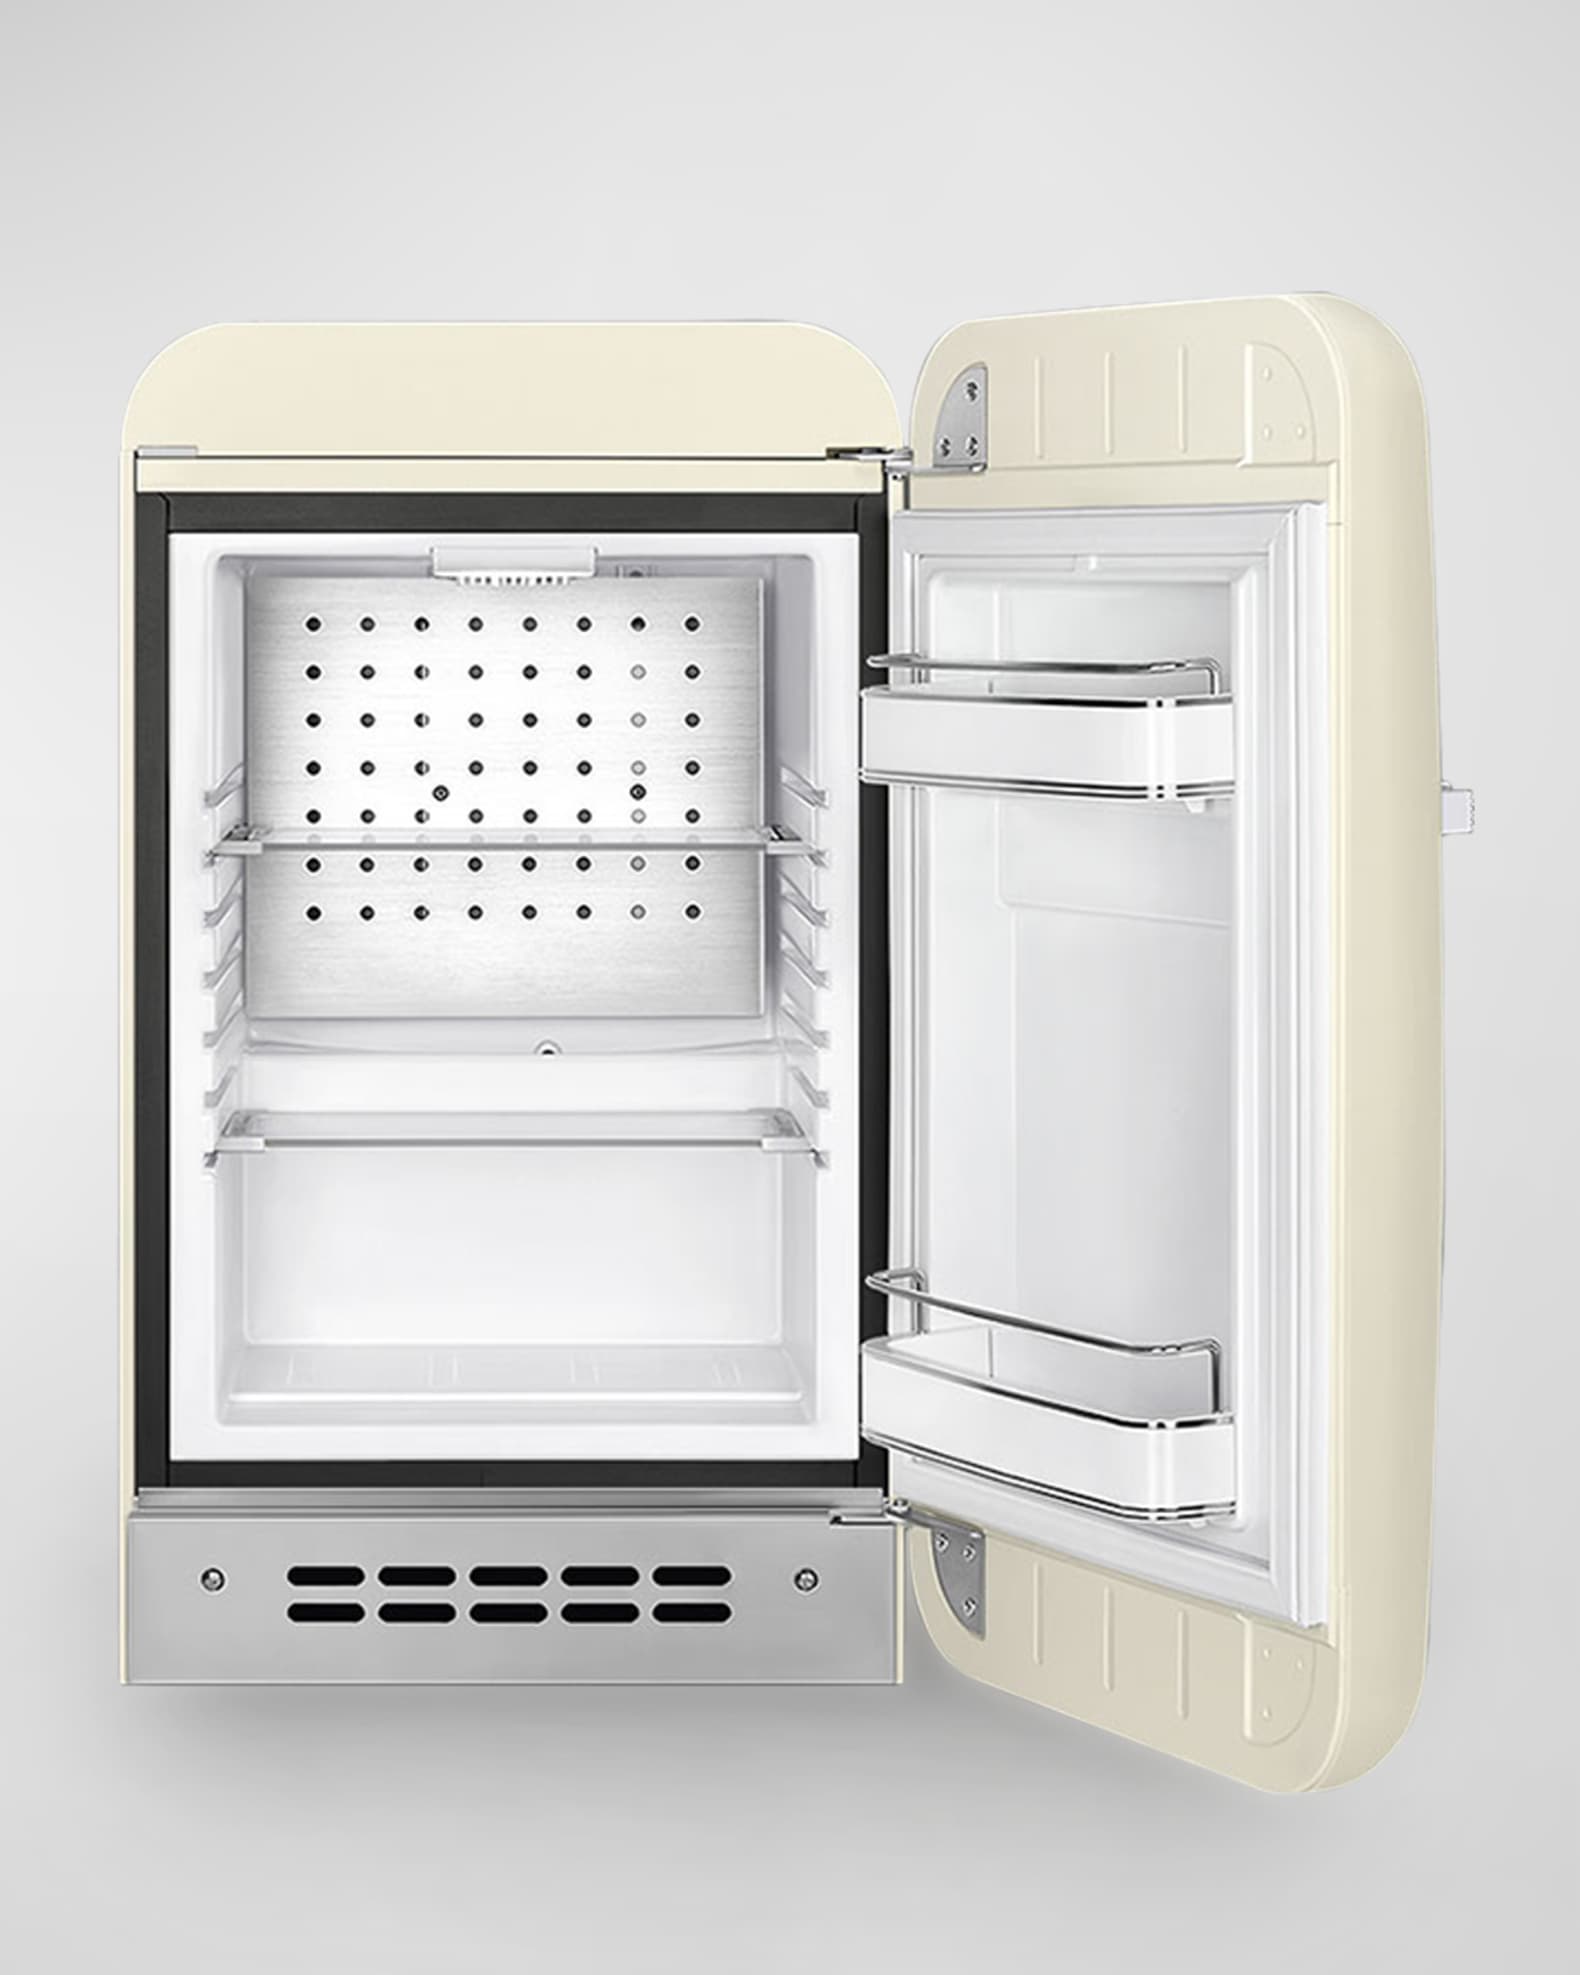 Smeg presents new FAB5 mini fridge